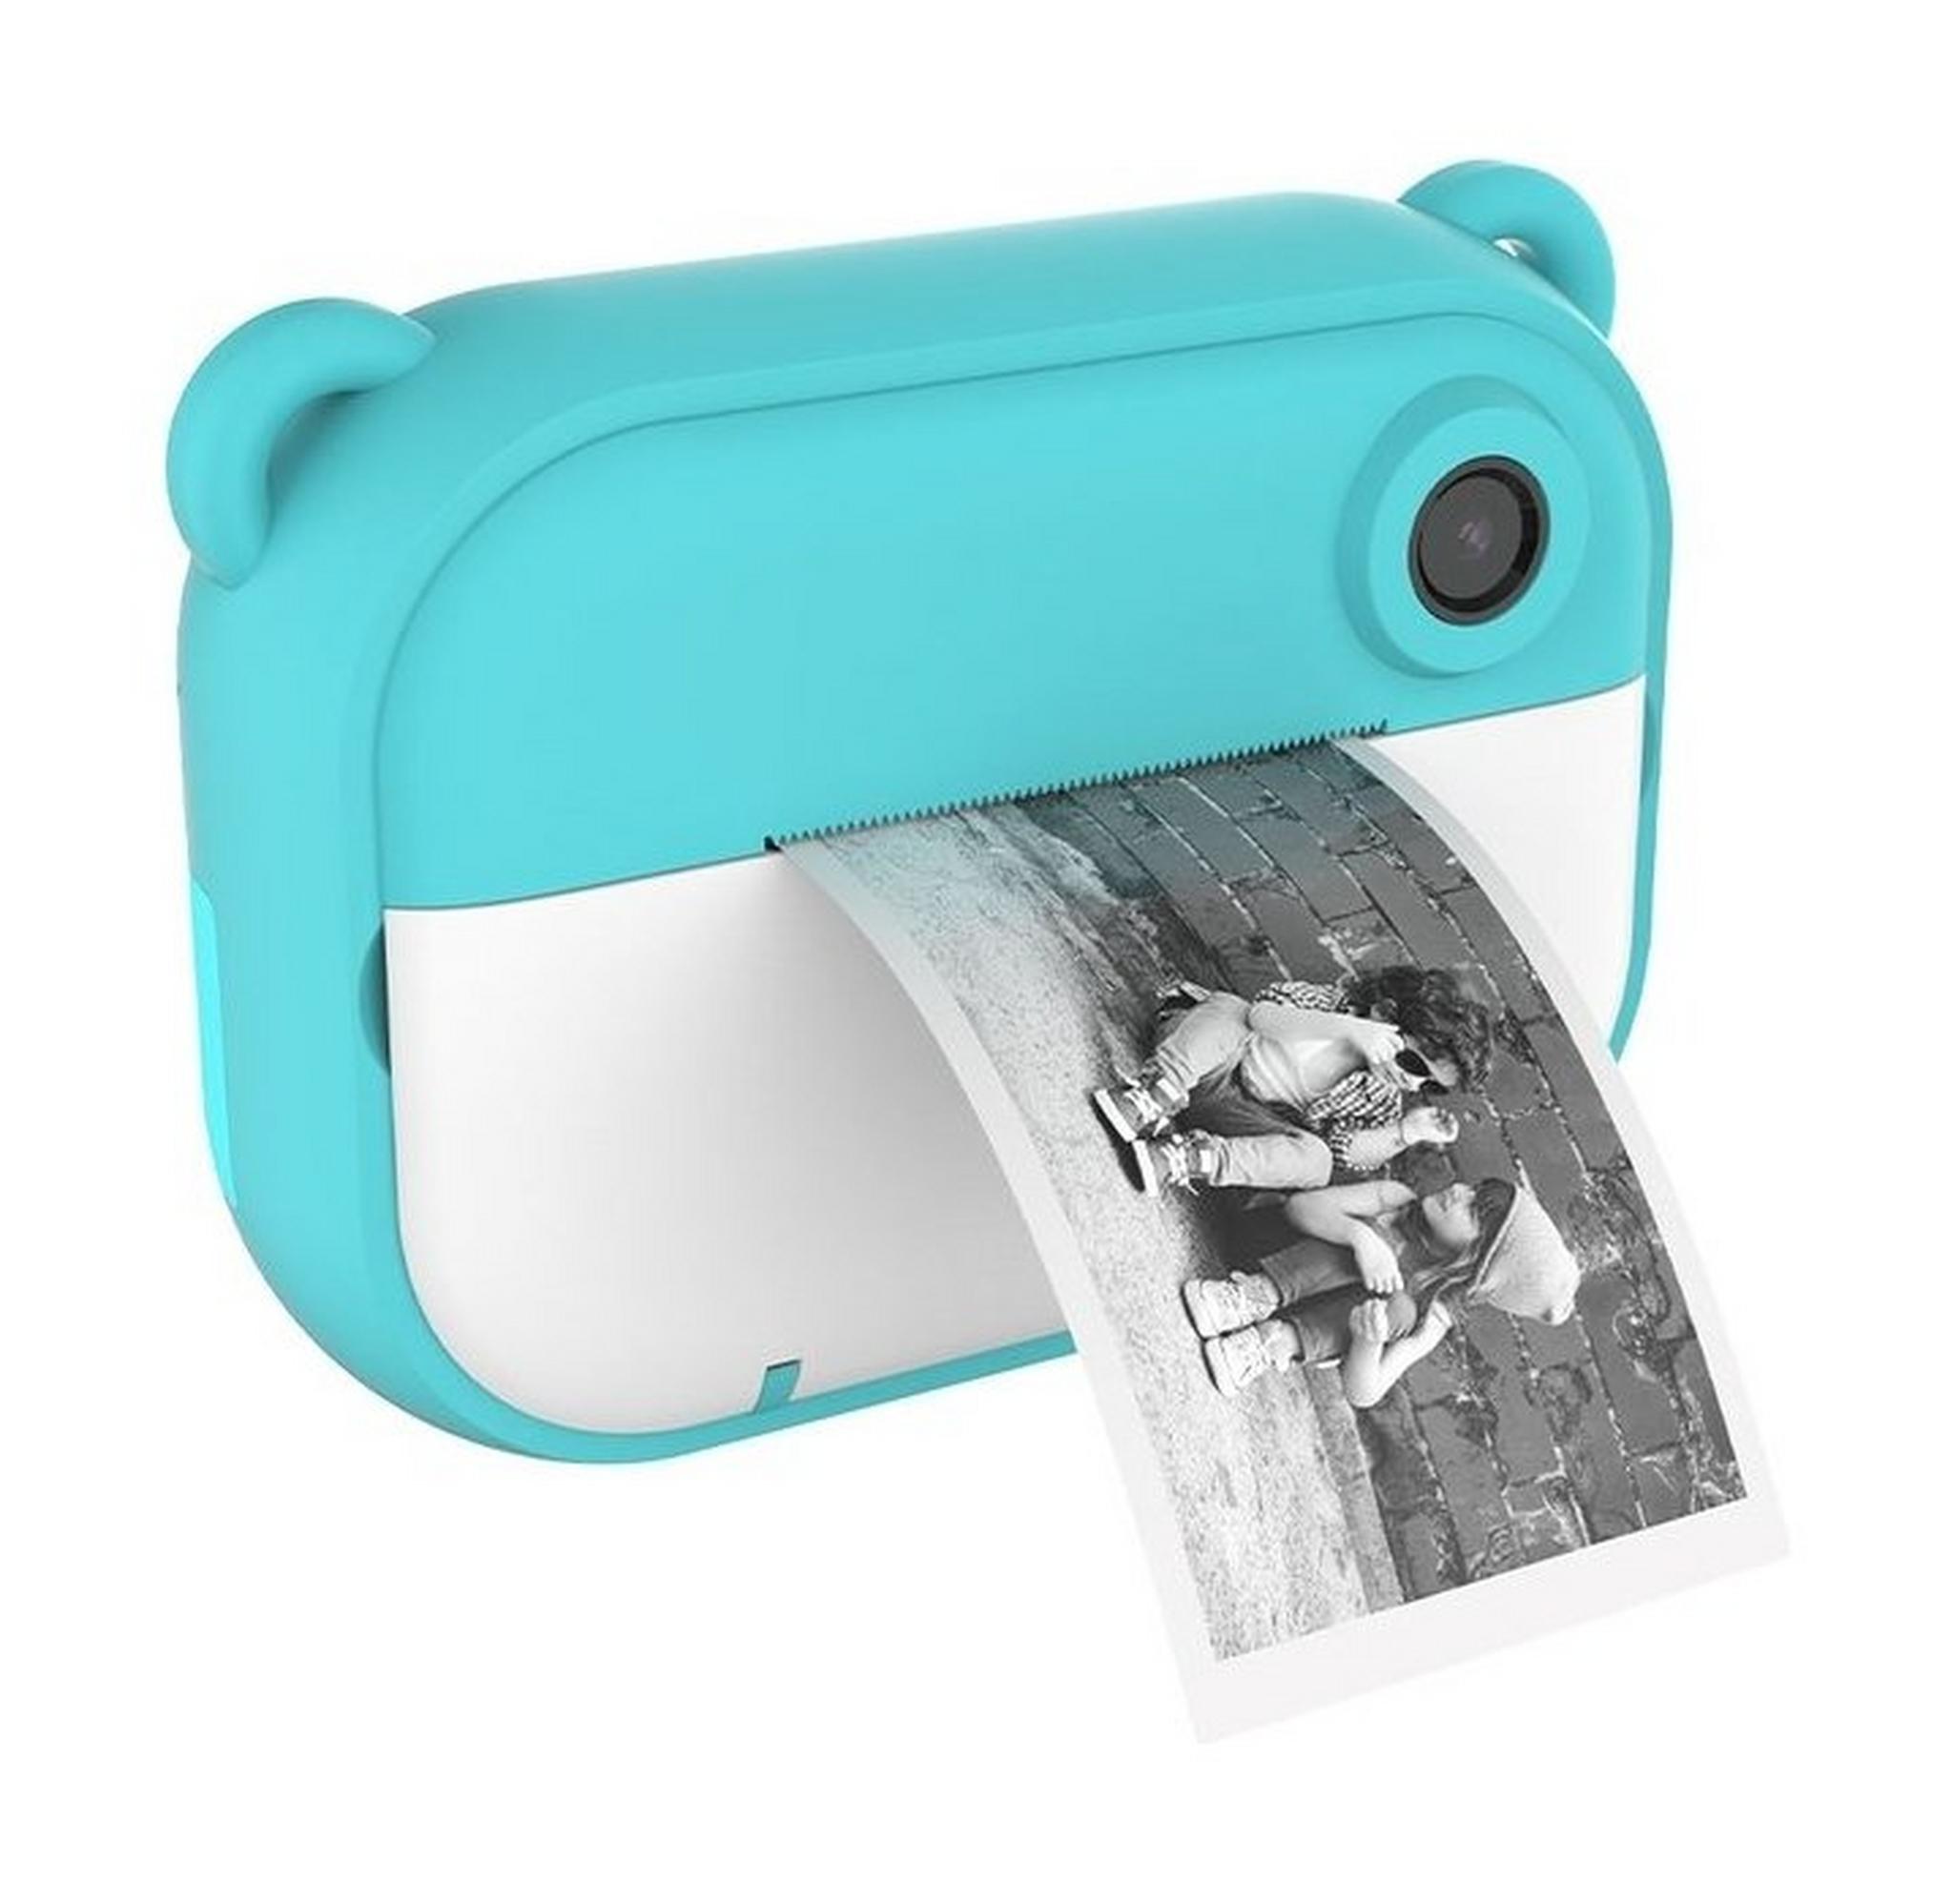 كاميرا ماي فيرست إنستا 2 - كاميرا الطباعة الفورية للأطفال بدقة 12 ميجابكسل - أزرق